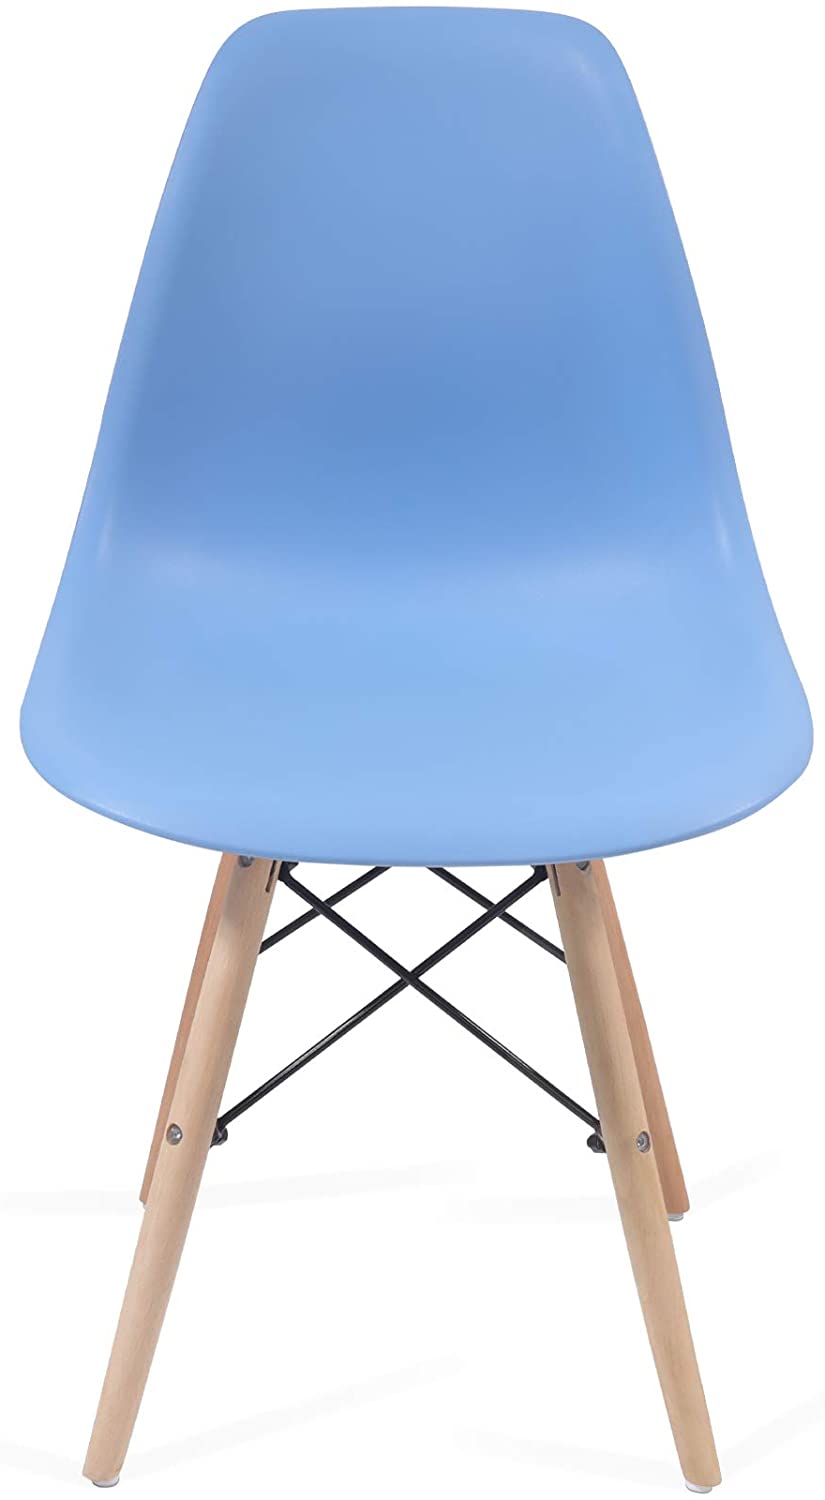 Eetkamerstoelen – Lounge stoelen – Scandinavische stijl – Retro – Vintage – Plastic – Set van 8 – Blauw